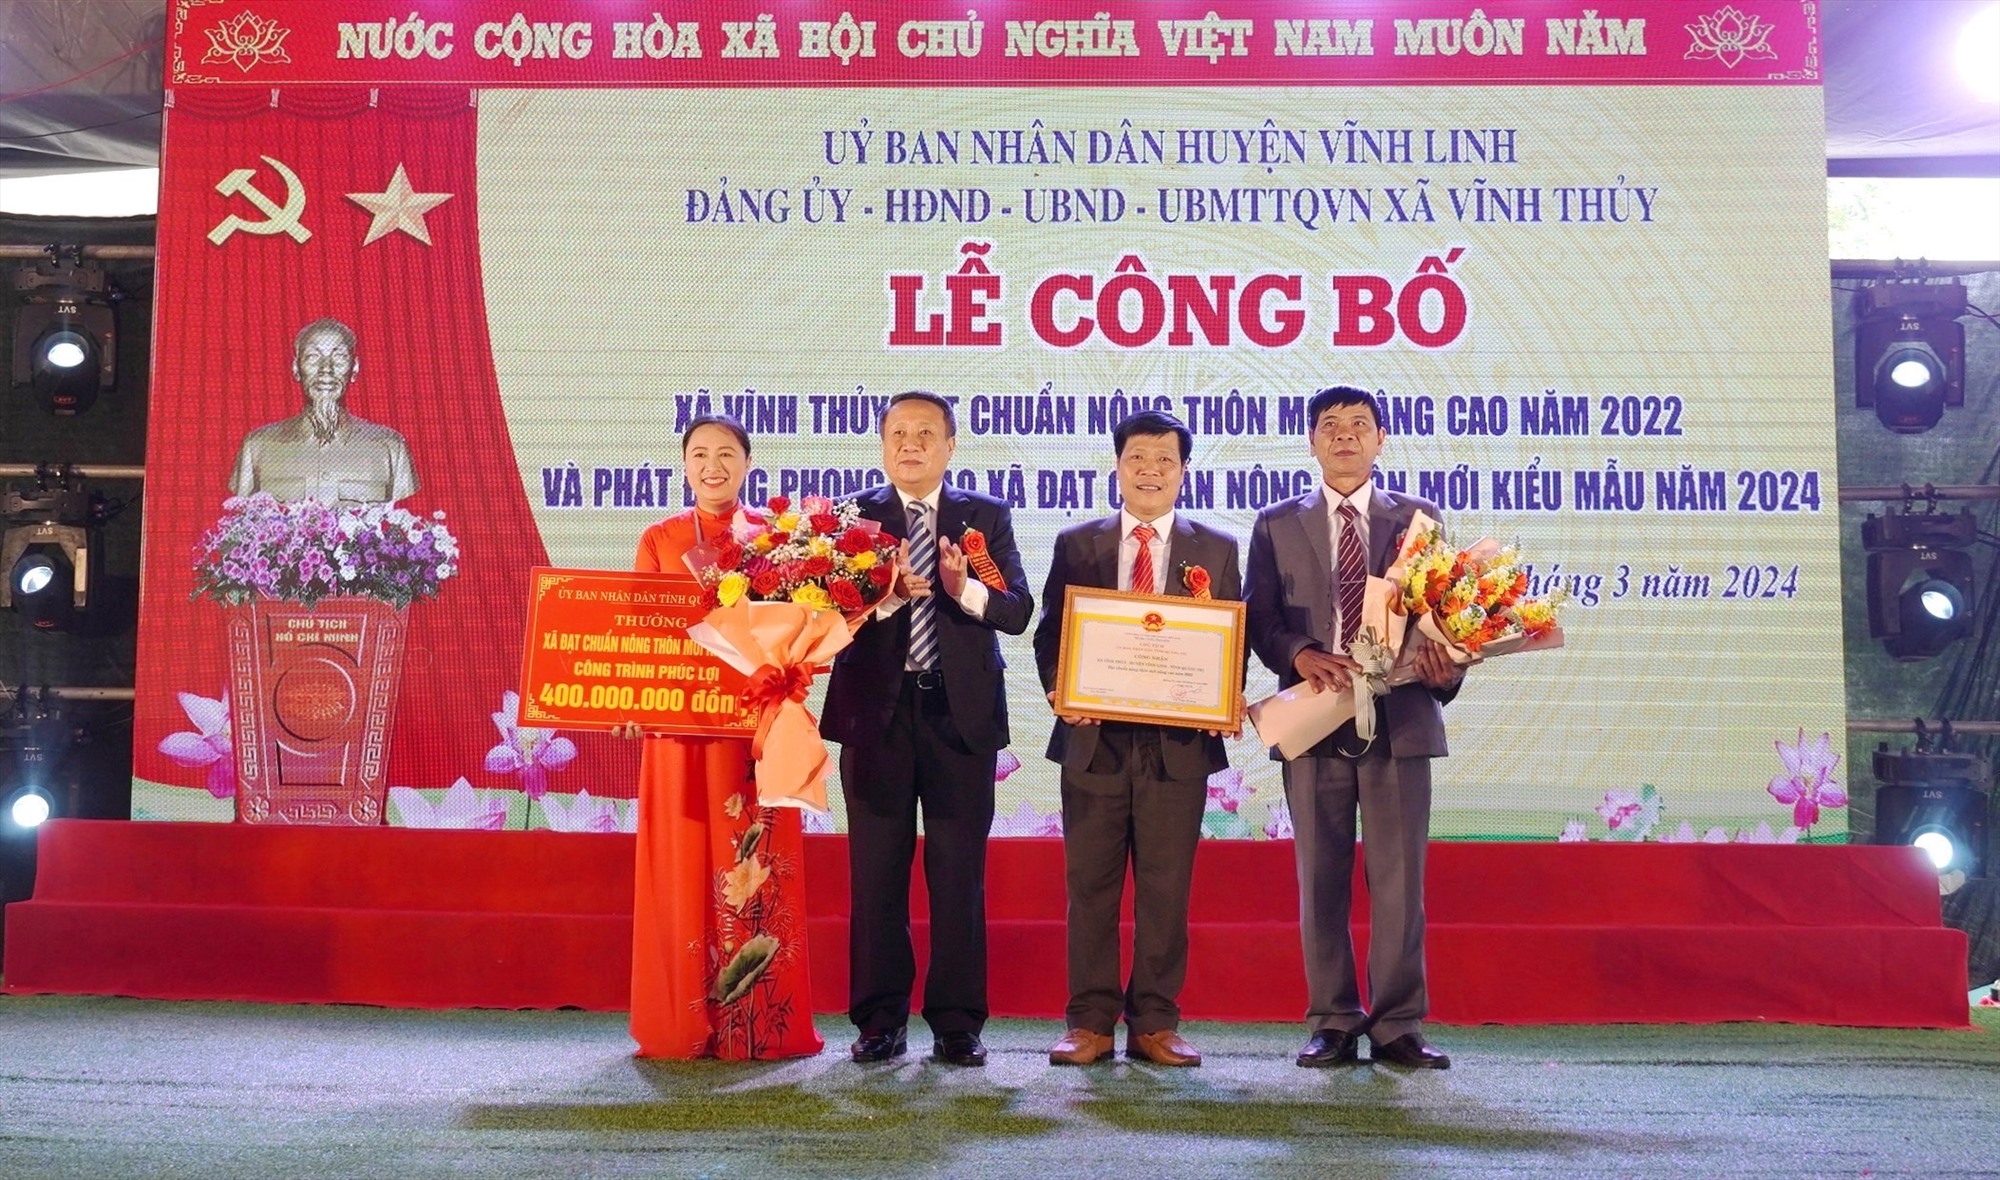 Phó Chủ tịch Thường trực UBND tỉnh Hà Sỹ Đồng trao bằng công nhận xã đạt chuẩn NTM nâng cao và công trình phúc lợi trị giá 400 triệu đồng cho xã Vĩnh Thủy - Ảnh: TN